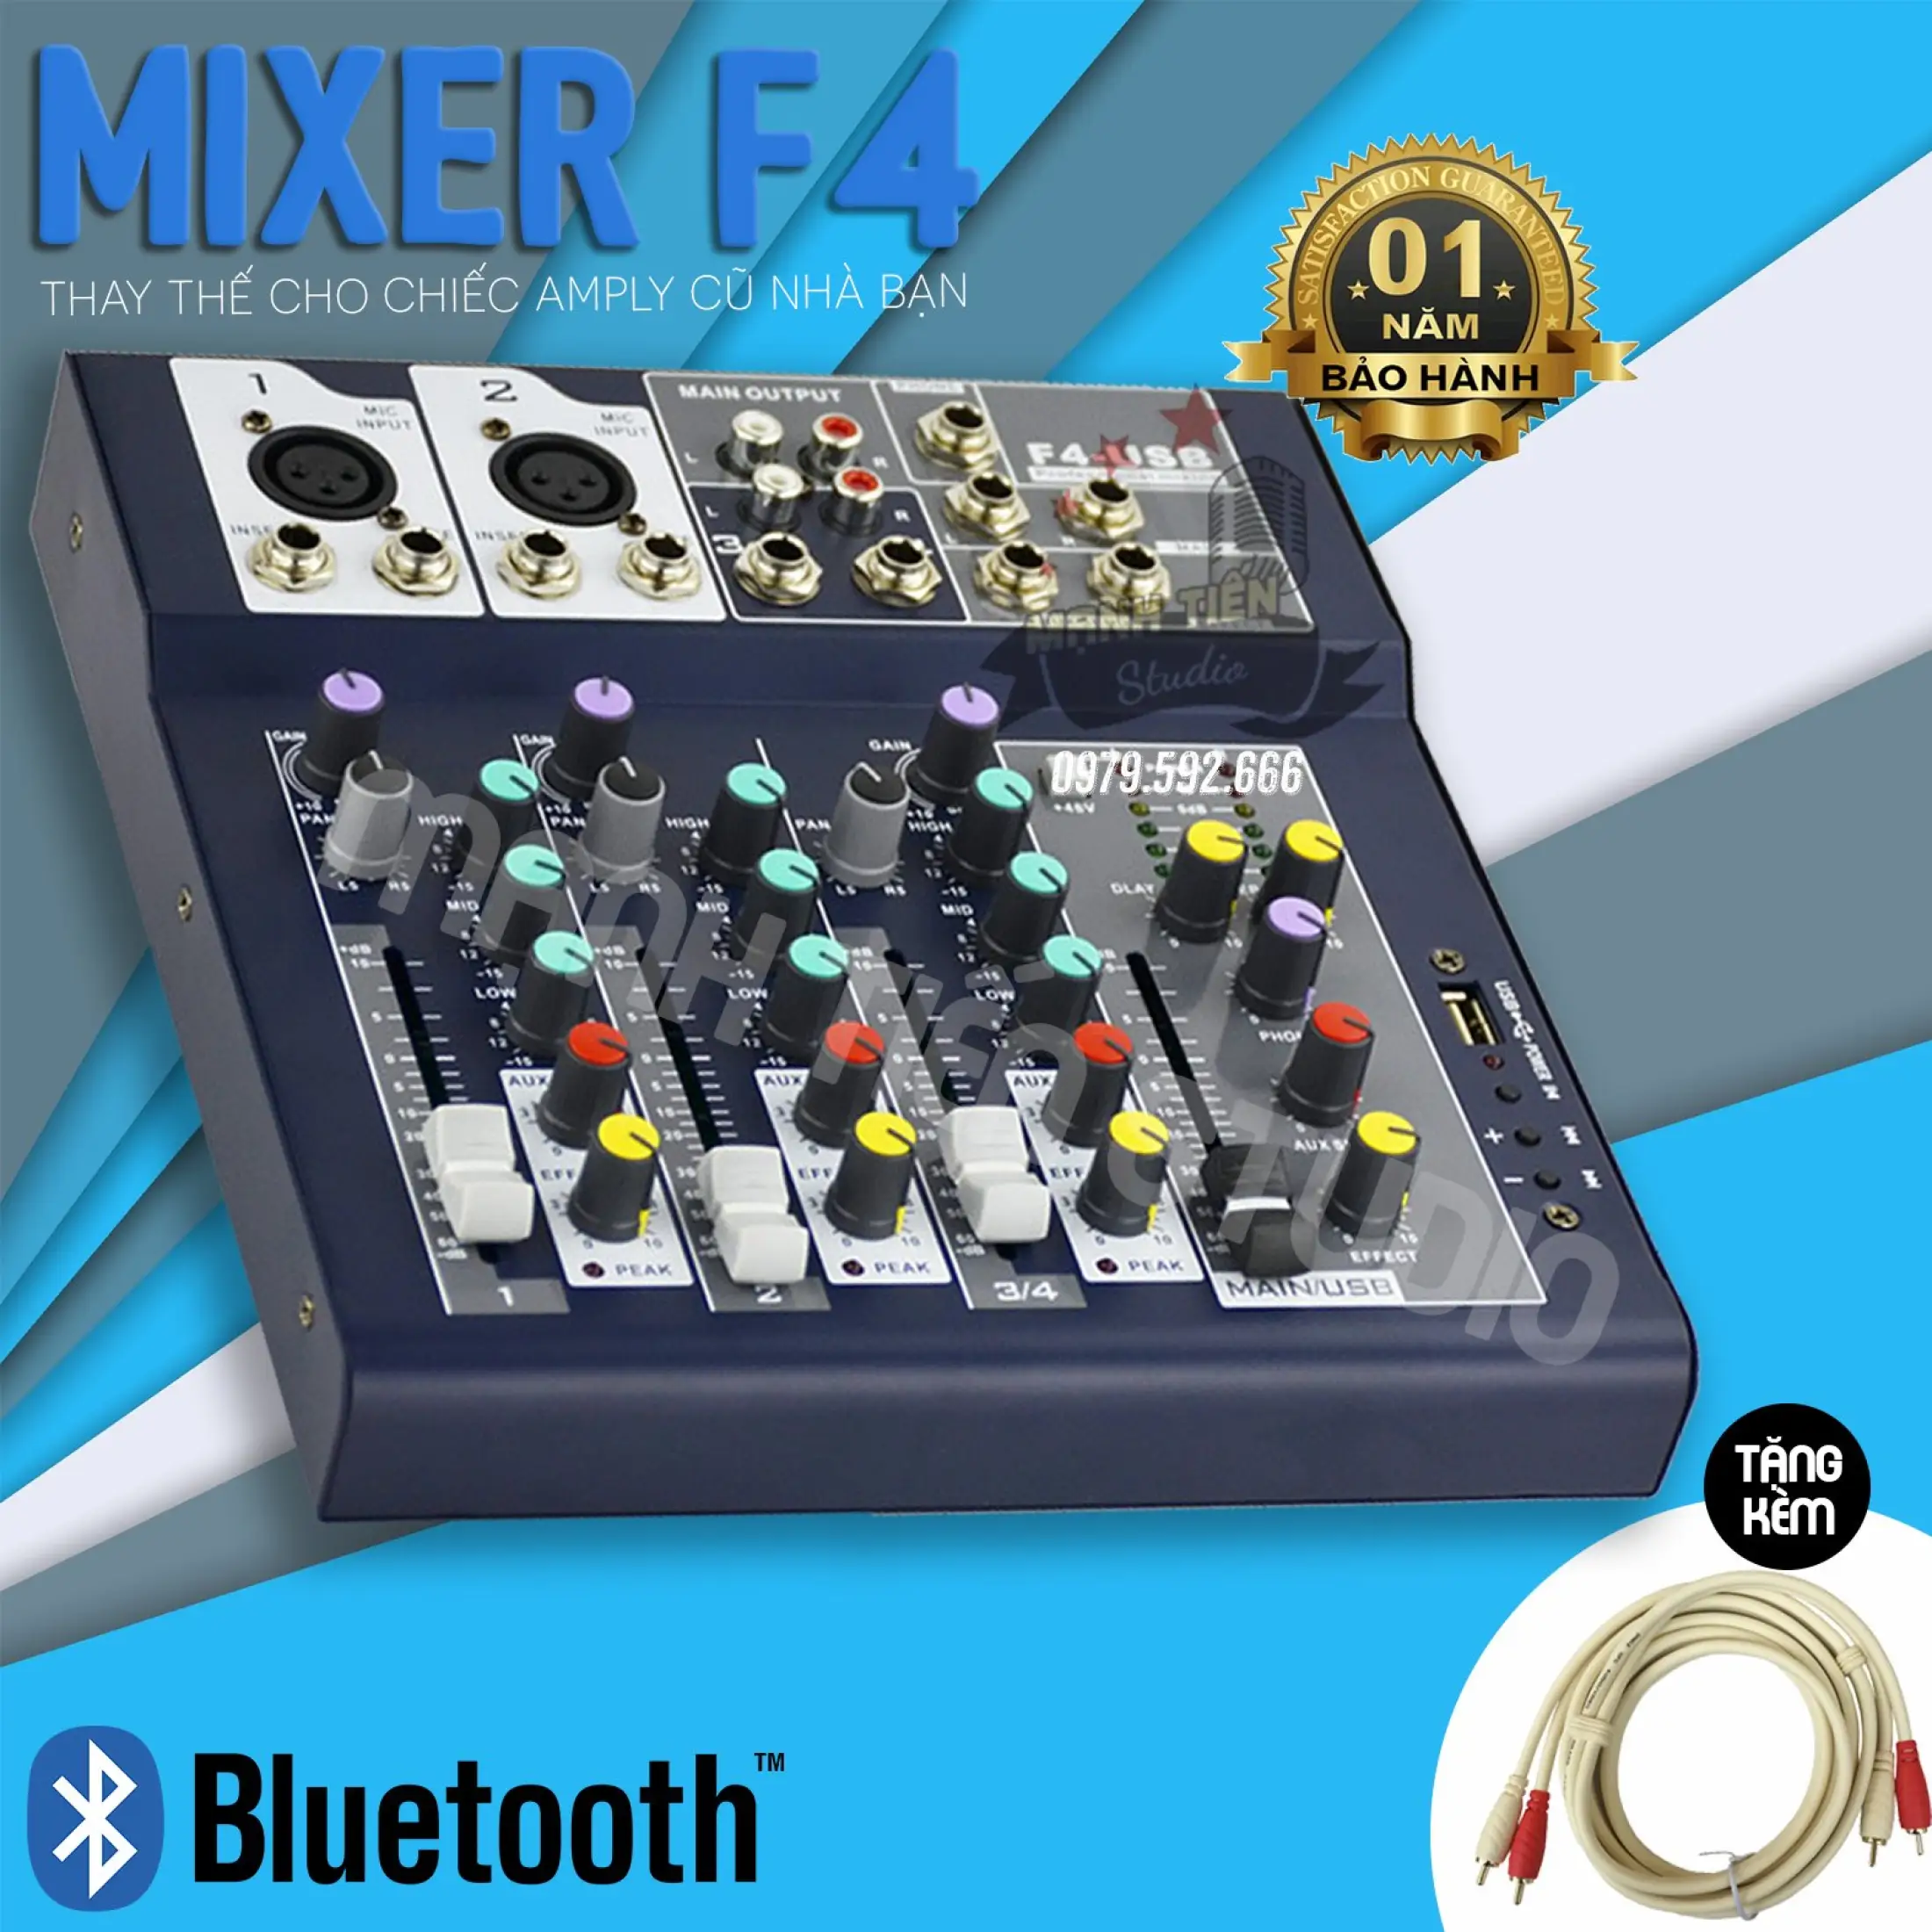 Trọn Bộ Thu Âm Mixer F4 Bluetooth Mixer Yamaha F4 + Micro Max39 Không Dây